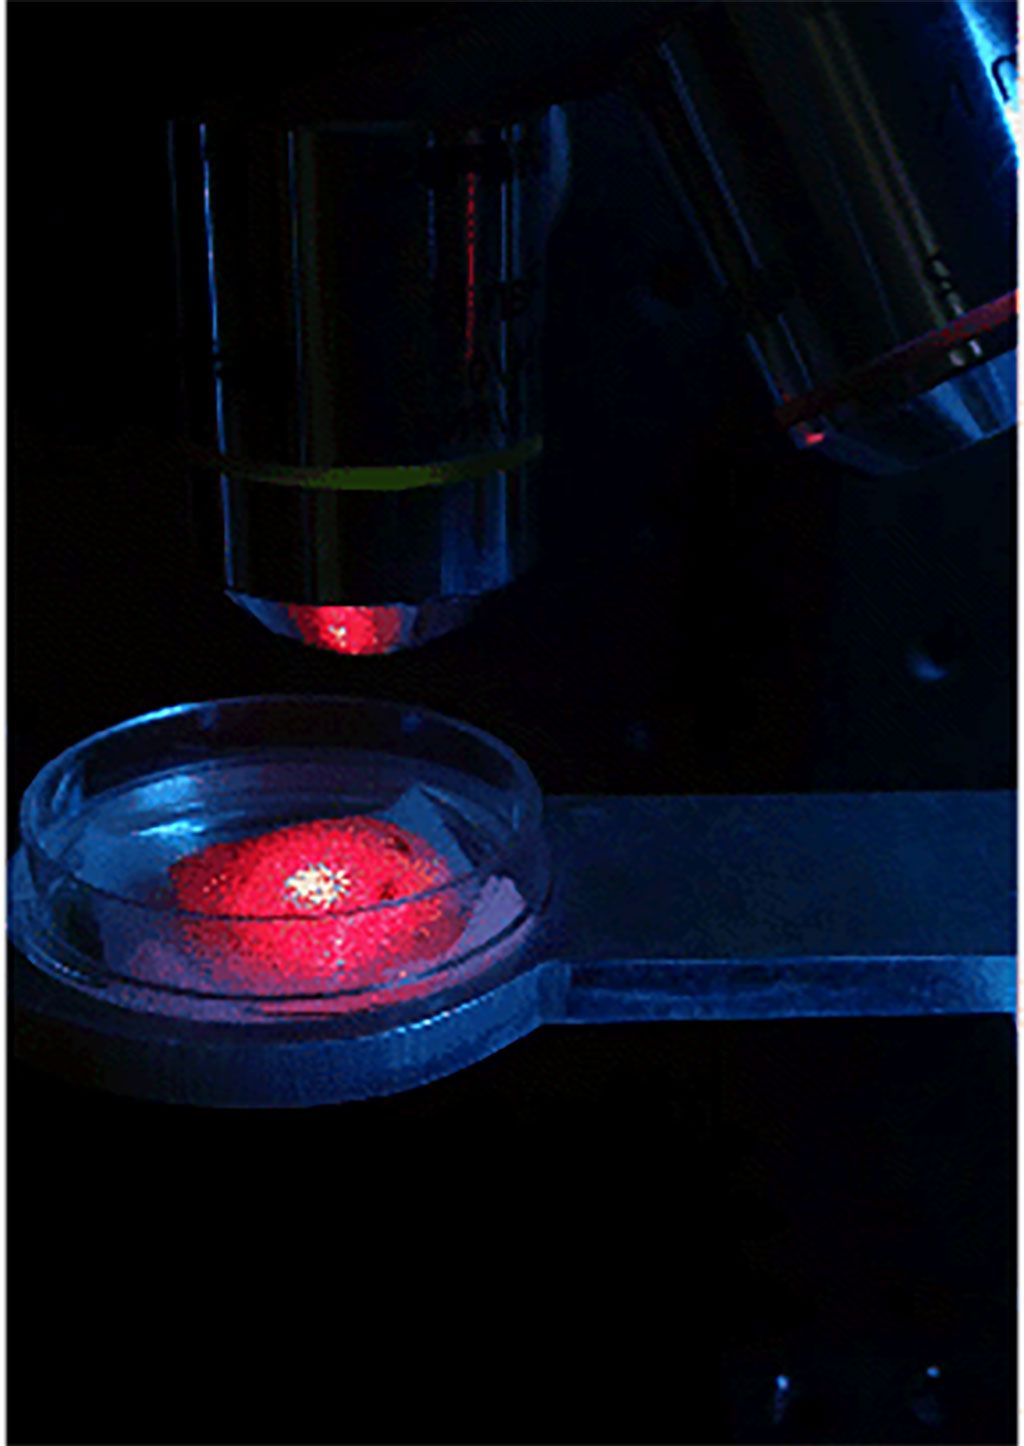 Imagen: La reología moteada con láser puede detectar la viscosidad de la sangre en el sitio (Fotografía cortesía de Nadkarni lab/ MGH)